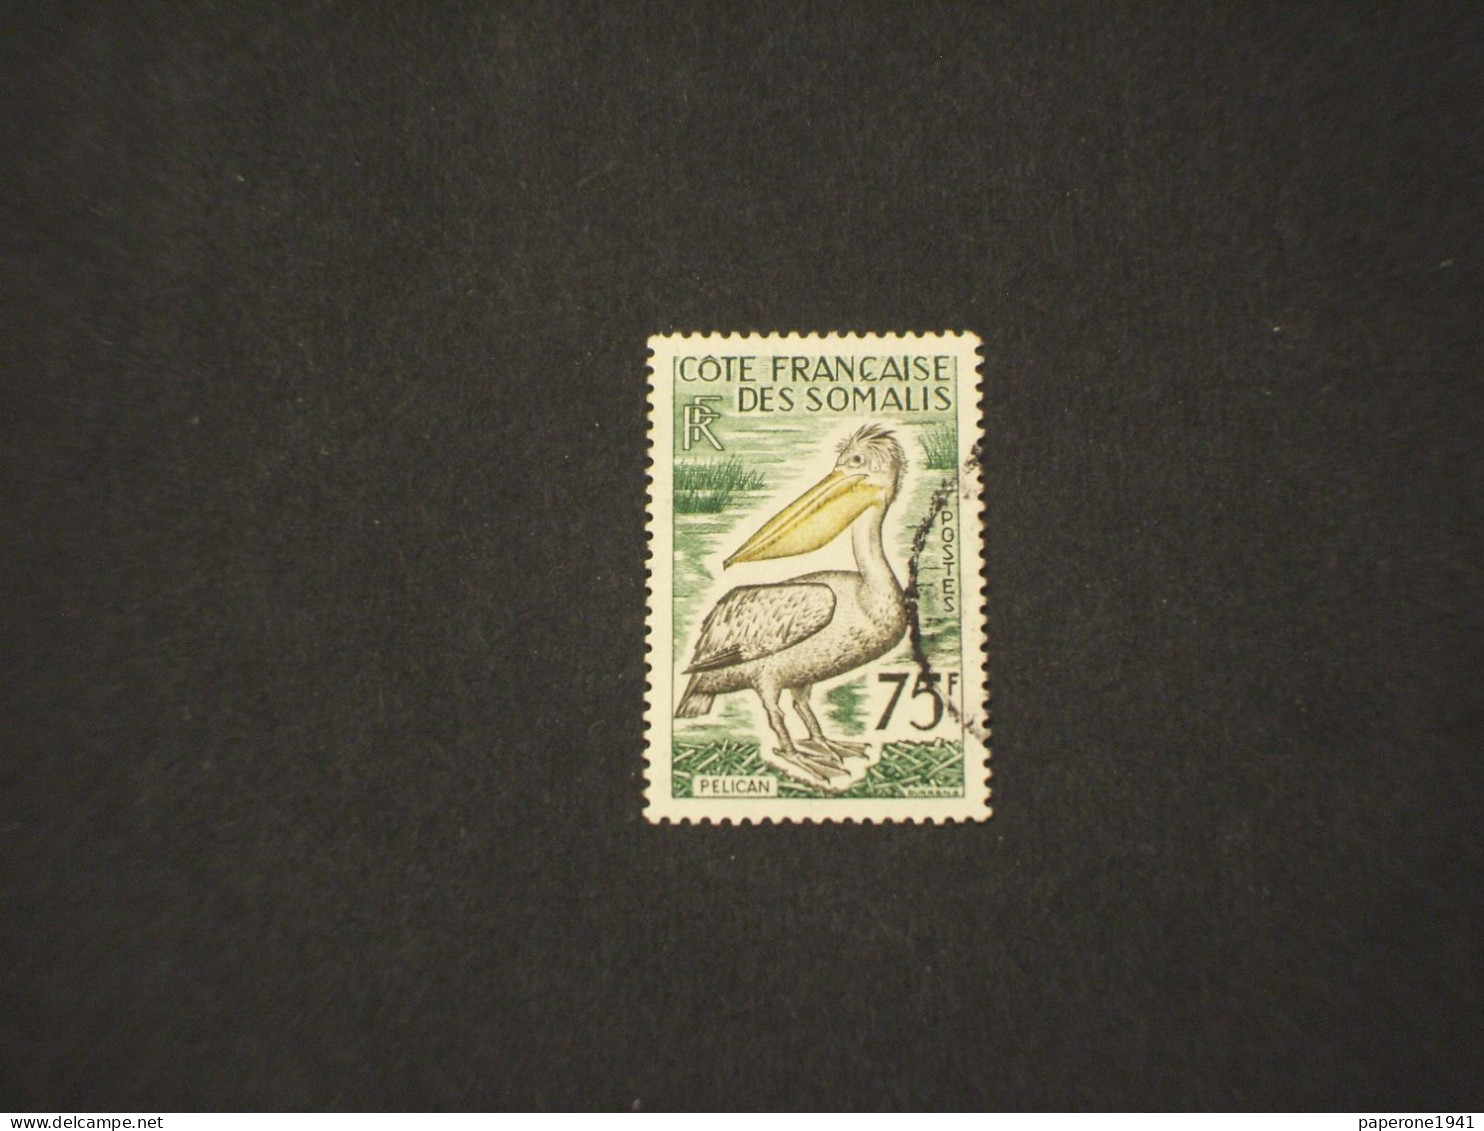 COSTA FRANCESE DEI SOMALI-COTE FRANCAISE DES SOMALIS - 1959/60 UCCELLO/PELLICANO 75 F. - TIMBRATO/USED - Usados